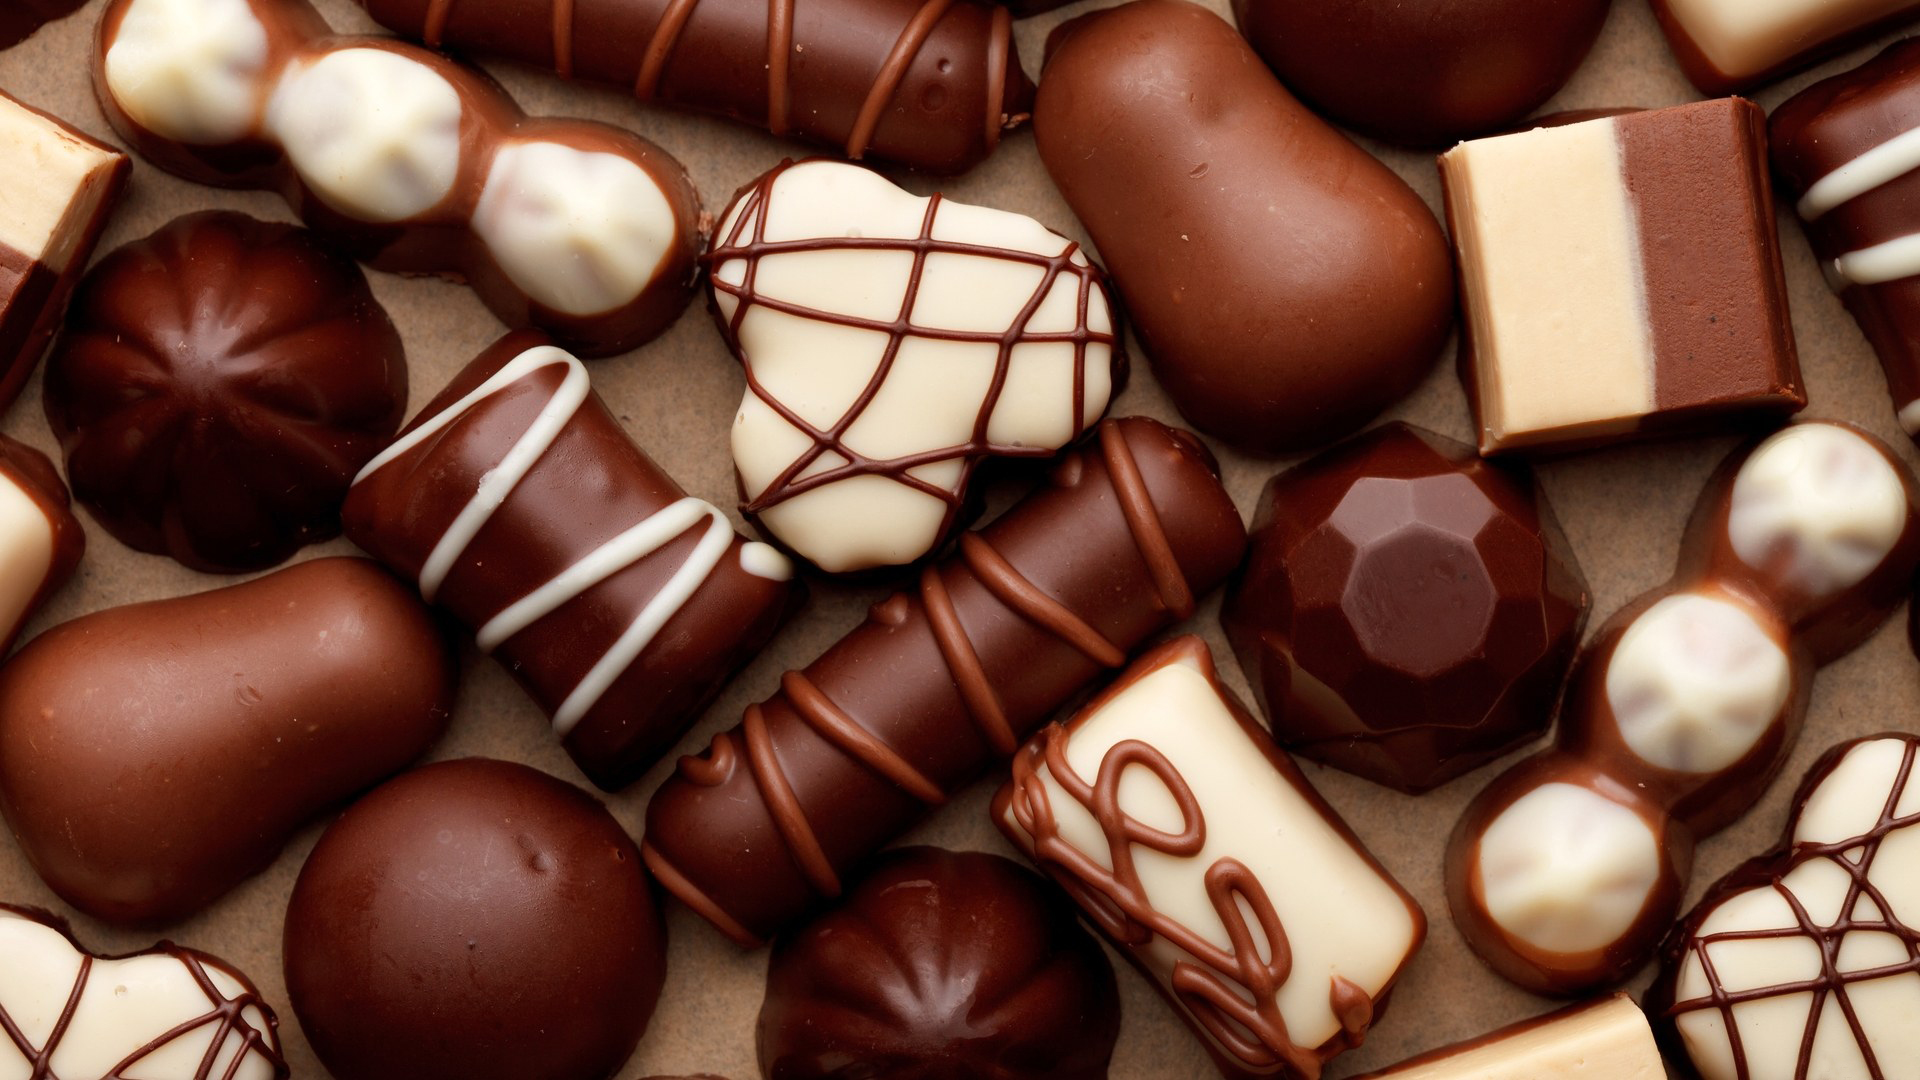 میدانید چرا خانمها باید شکلات بخورند ؟؟